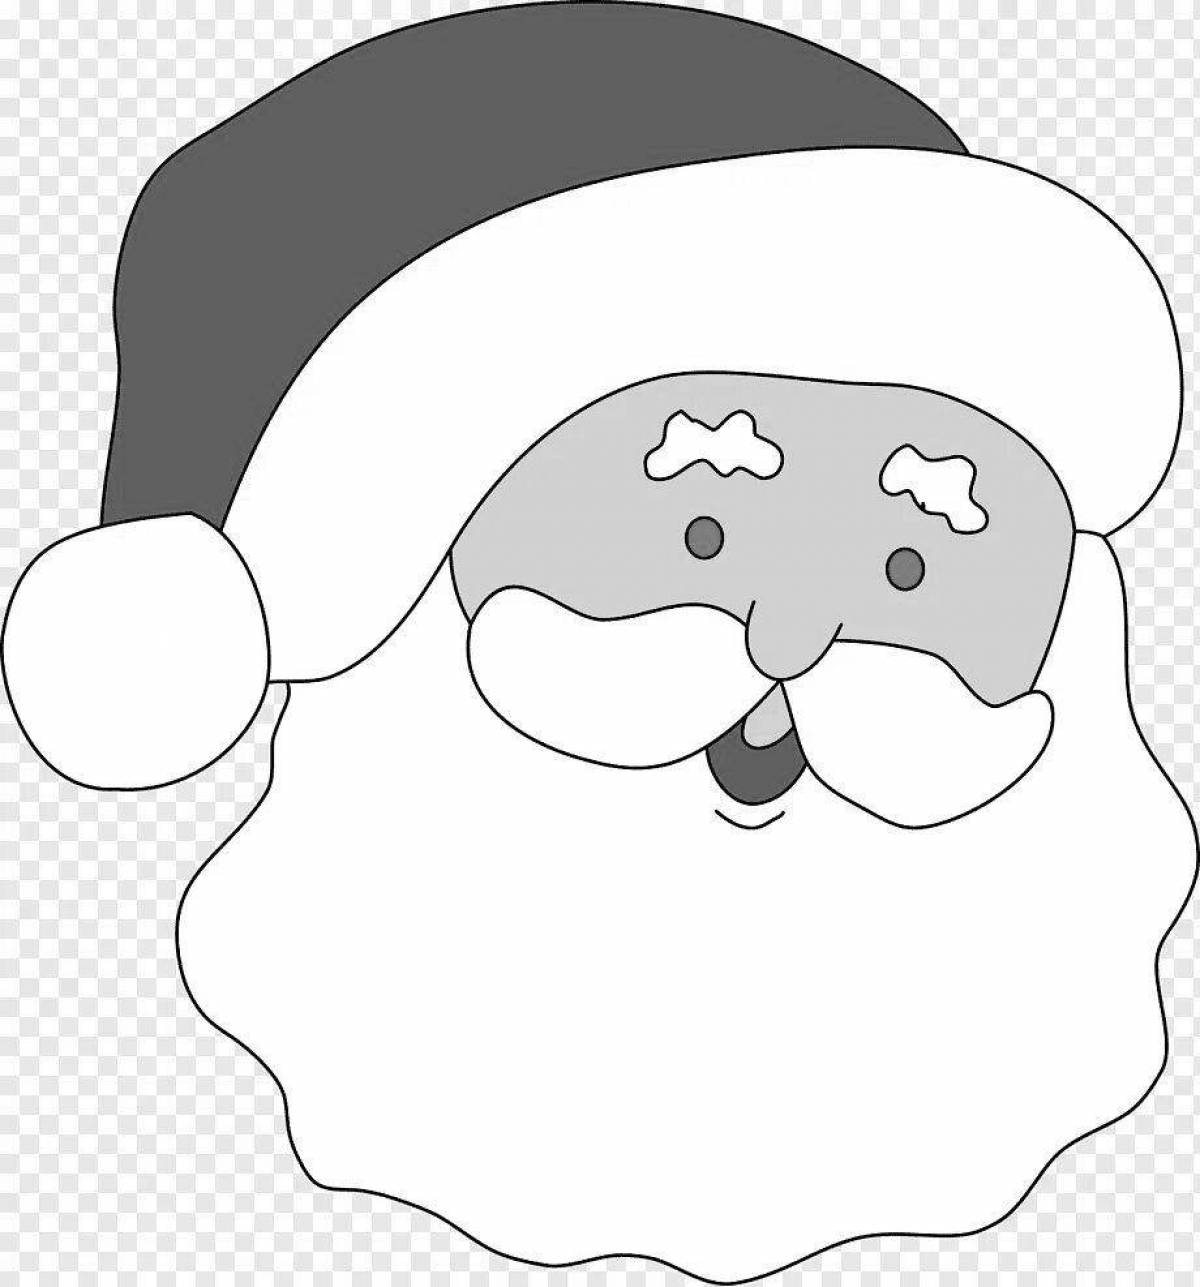 Coloring page humorous santa claus mask